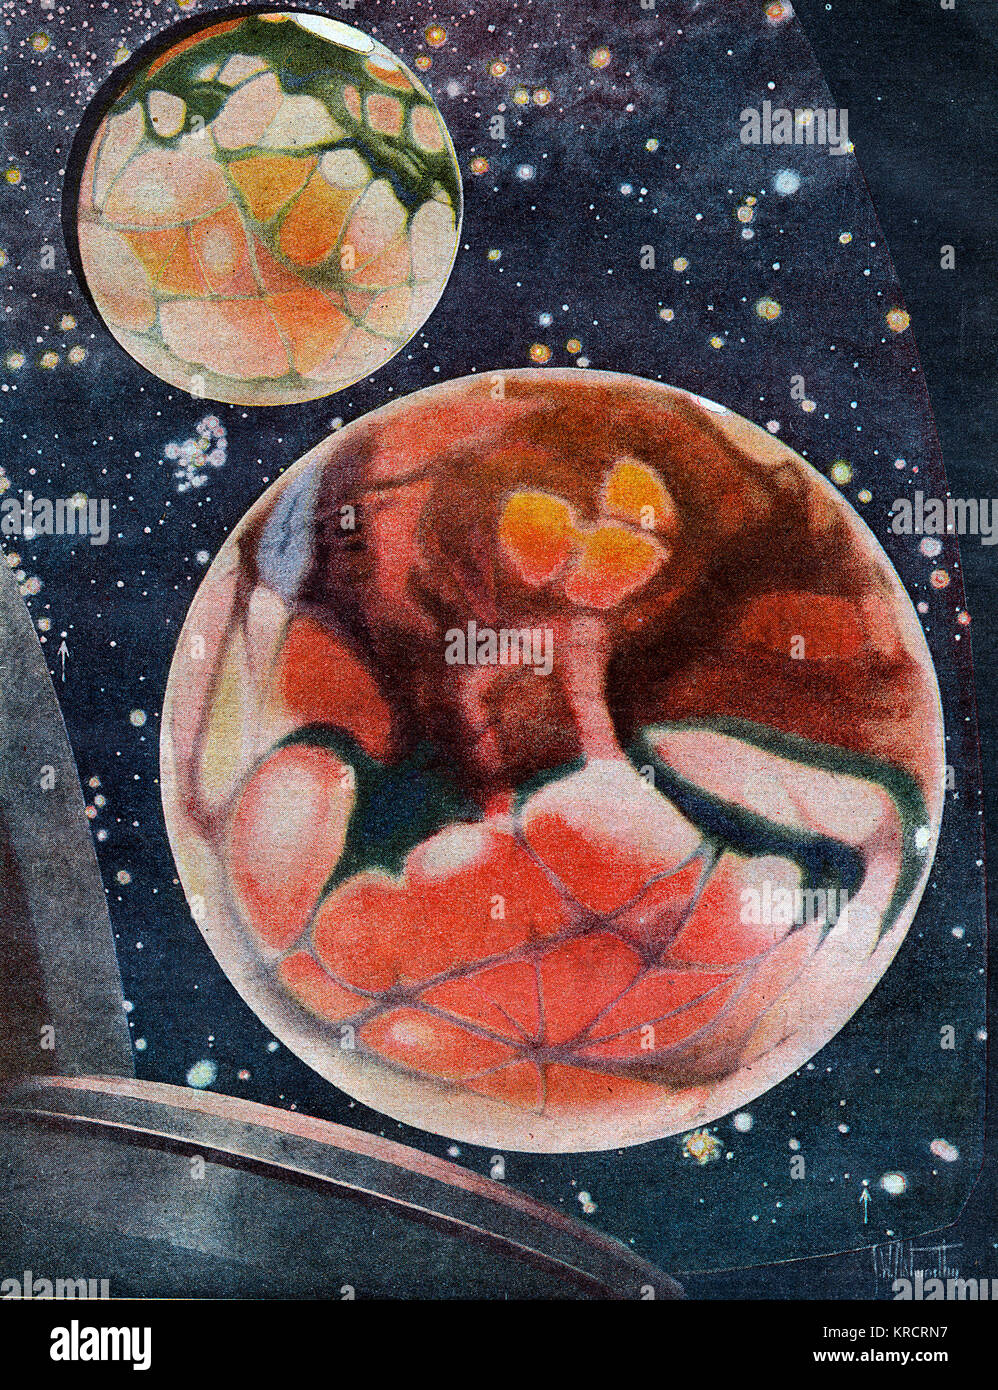 Les deux visages de la planète Mars, vu contre un ciel de nuit avec des étoiles. Date : 1927 Banque D'Images